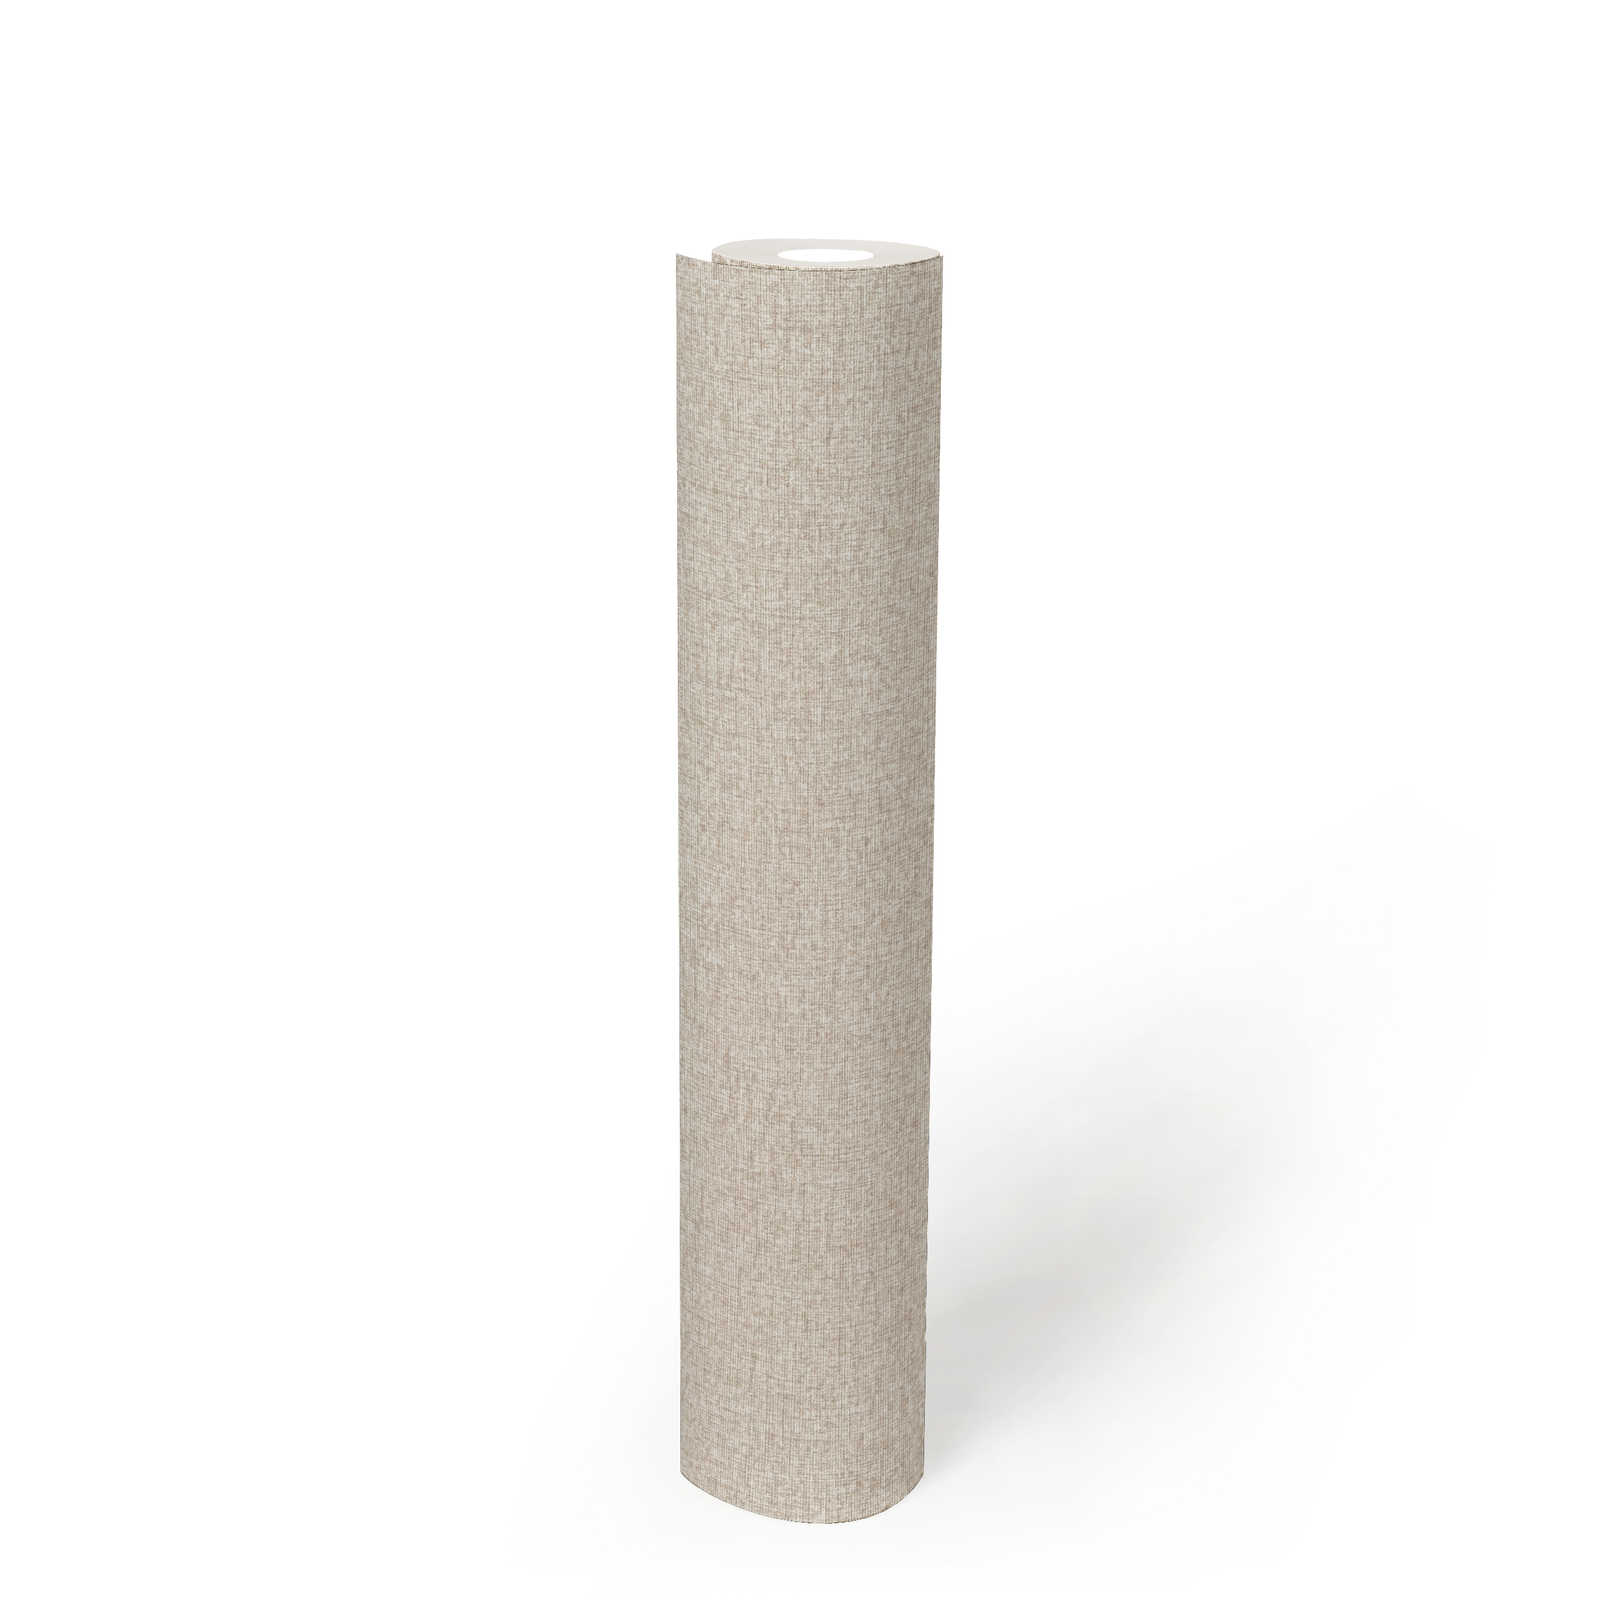             Vliesbehang in stoflook effen met lichte structuur, mat - taupe, beige, grijs
        